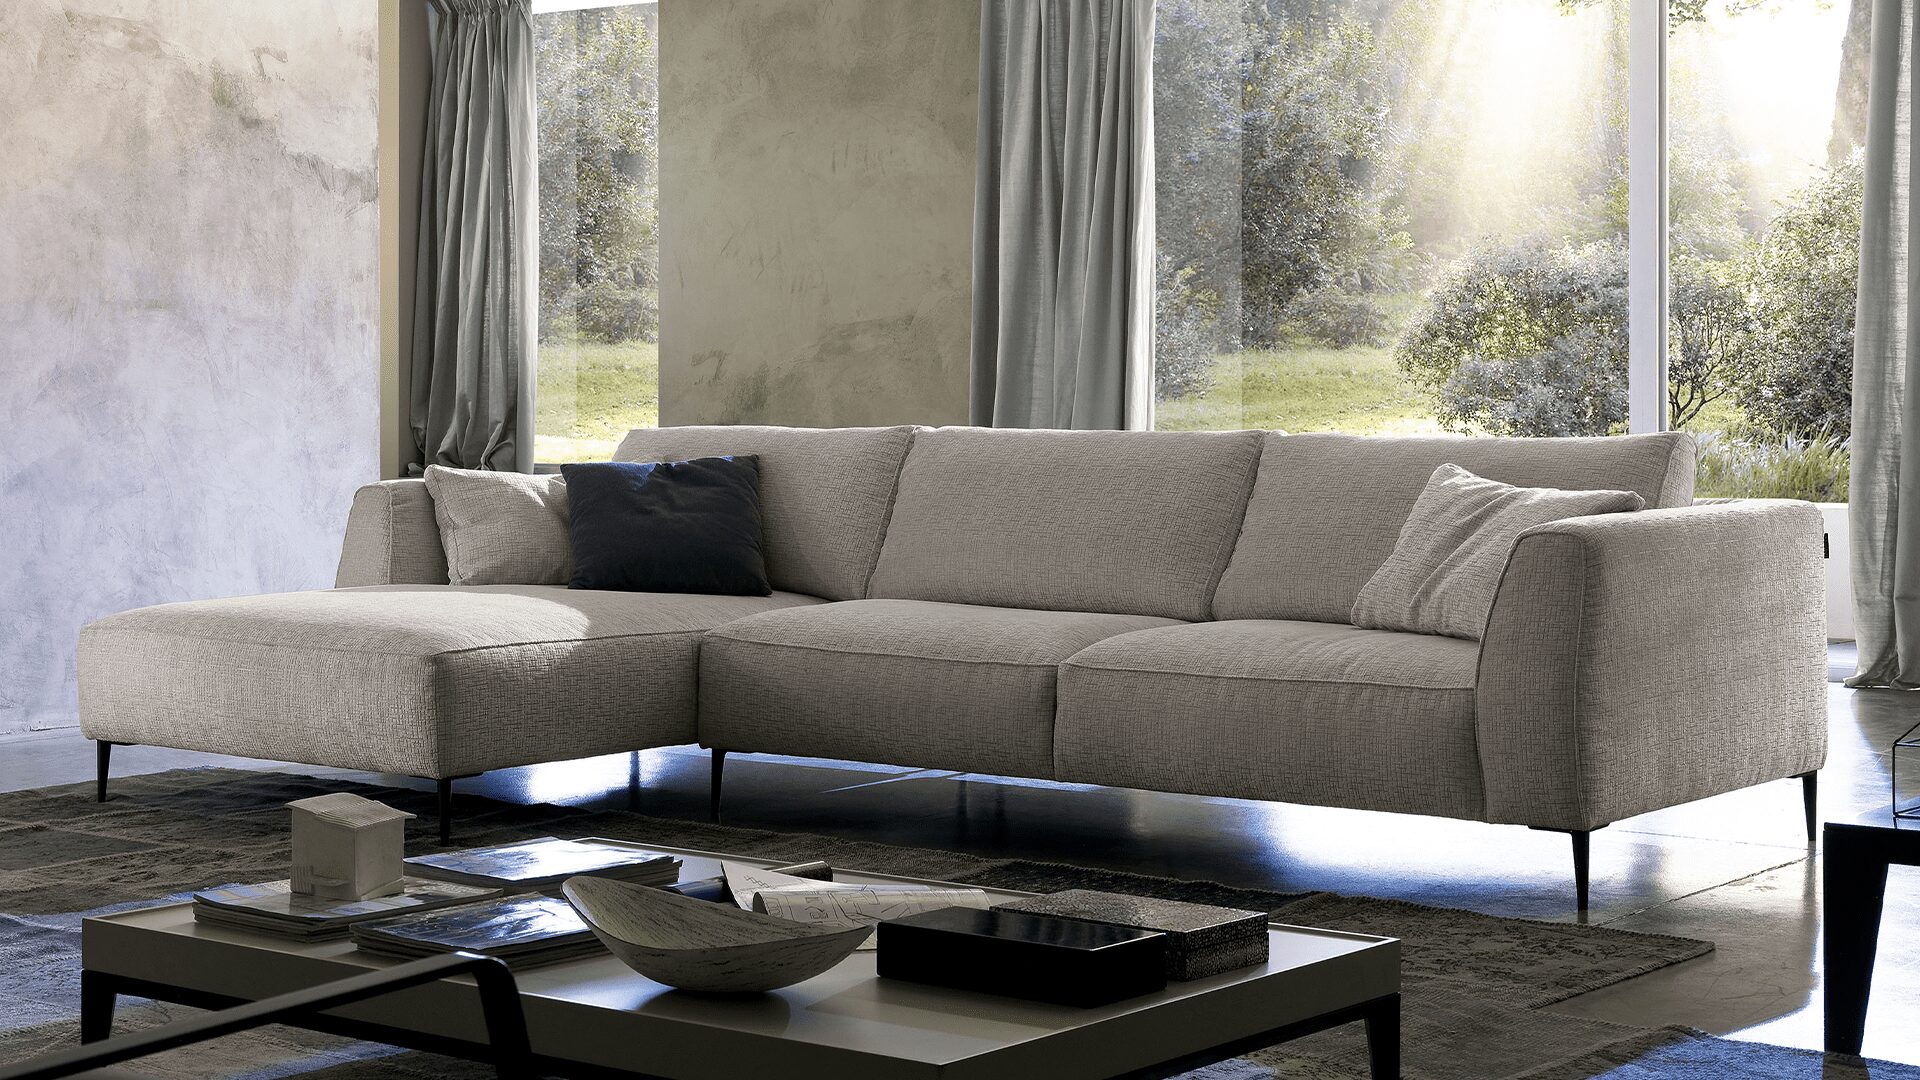 Come prendersi cura del proprio divano in tessuto? – Chateau d'Ax